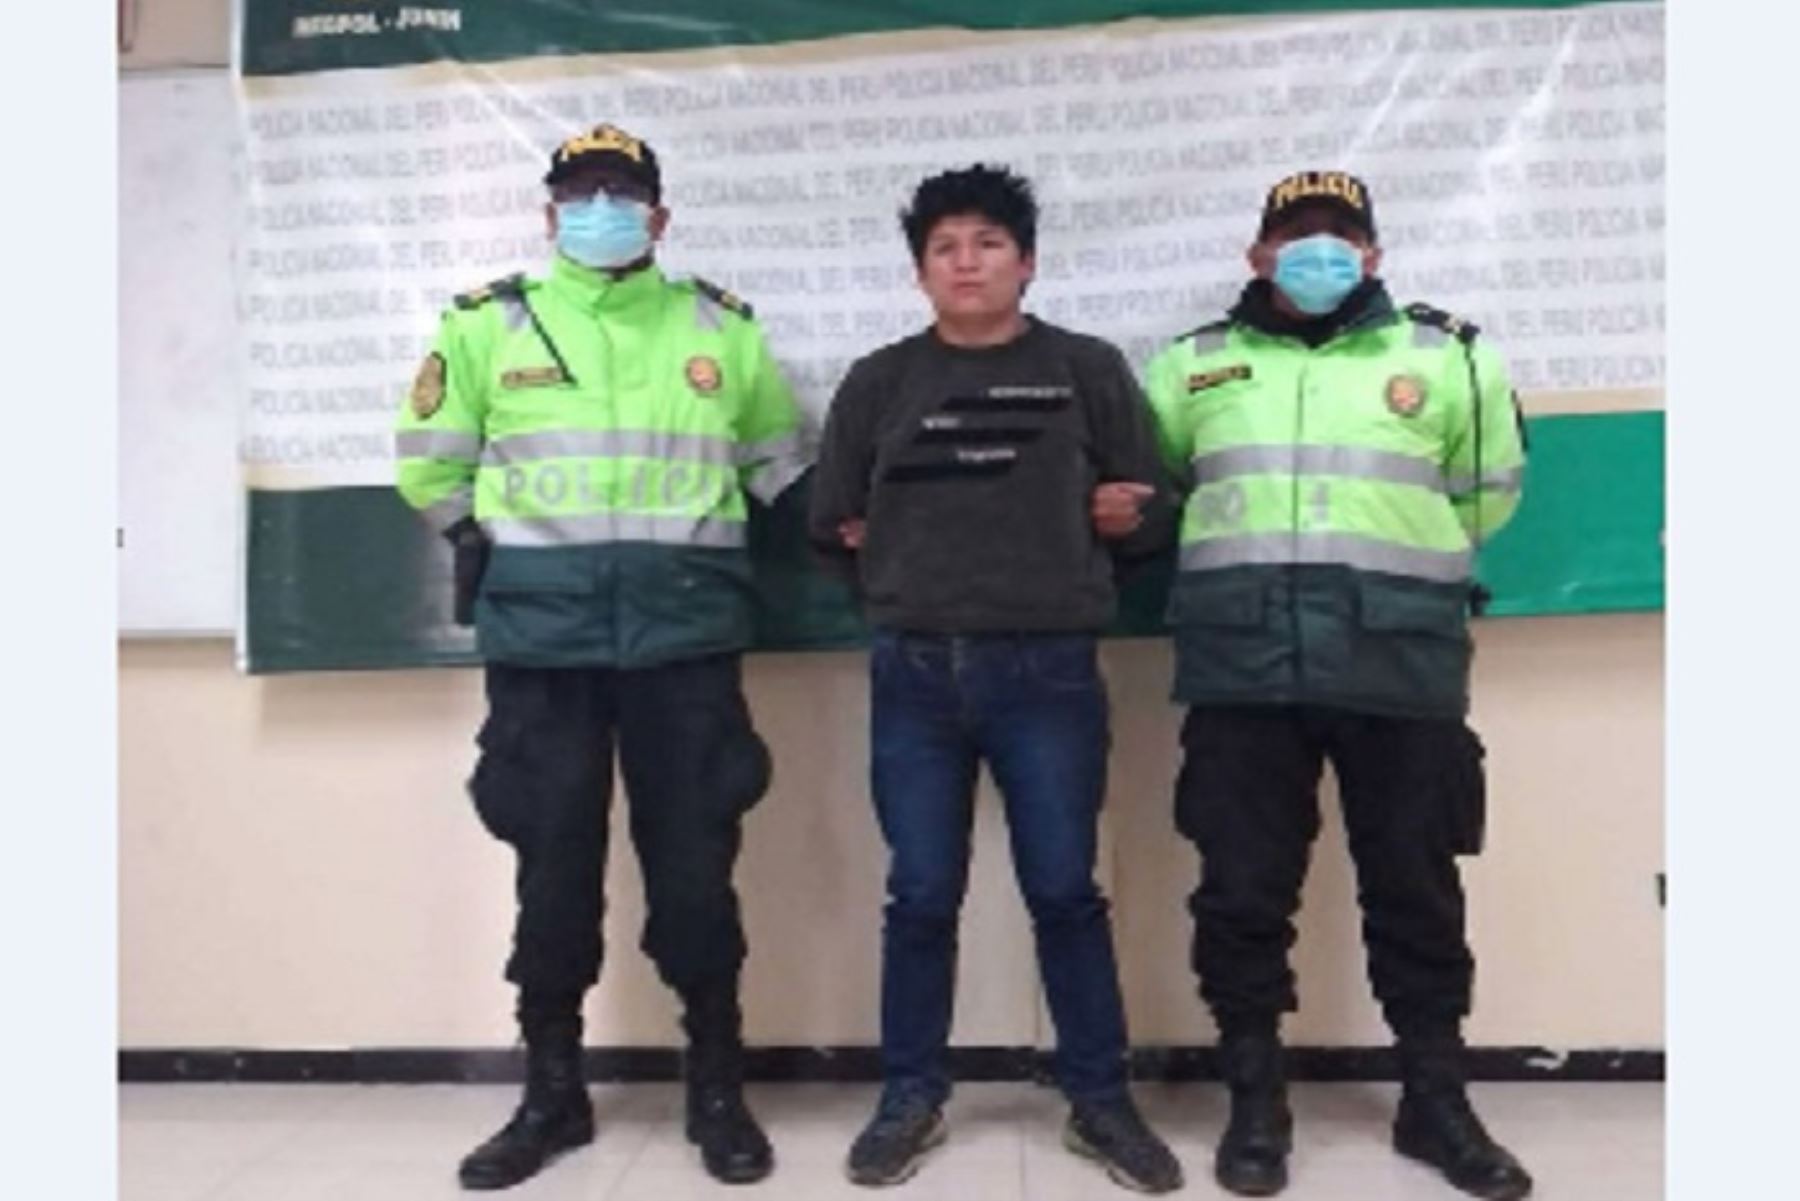 Los presuntos violdadores, que fueron reconocidos por la agraviada, permanecen en la Comisaría de La Oroya.